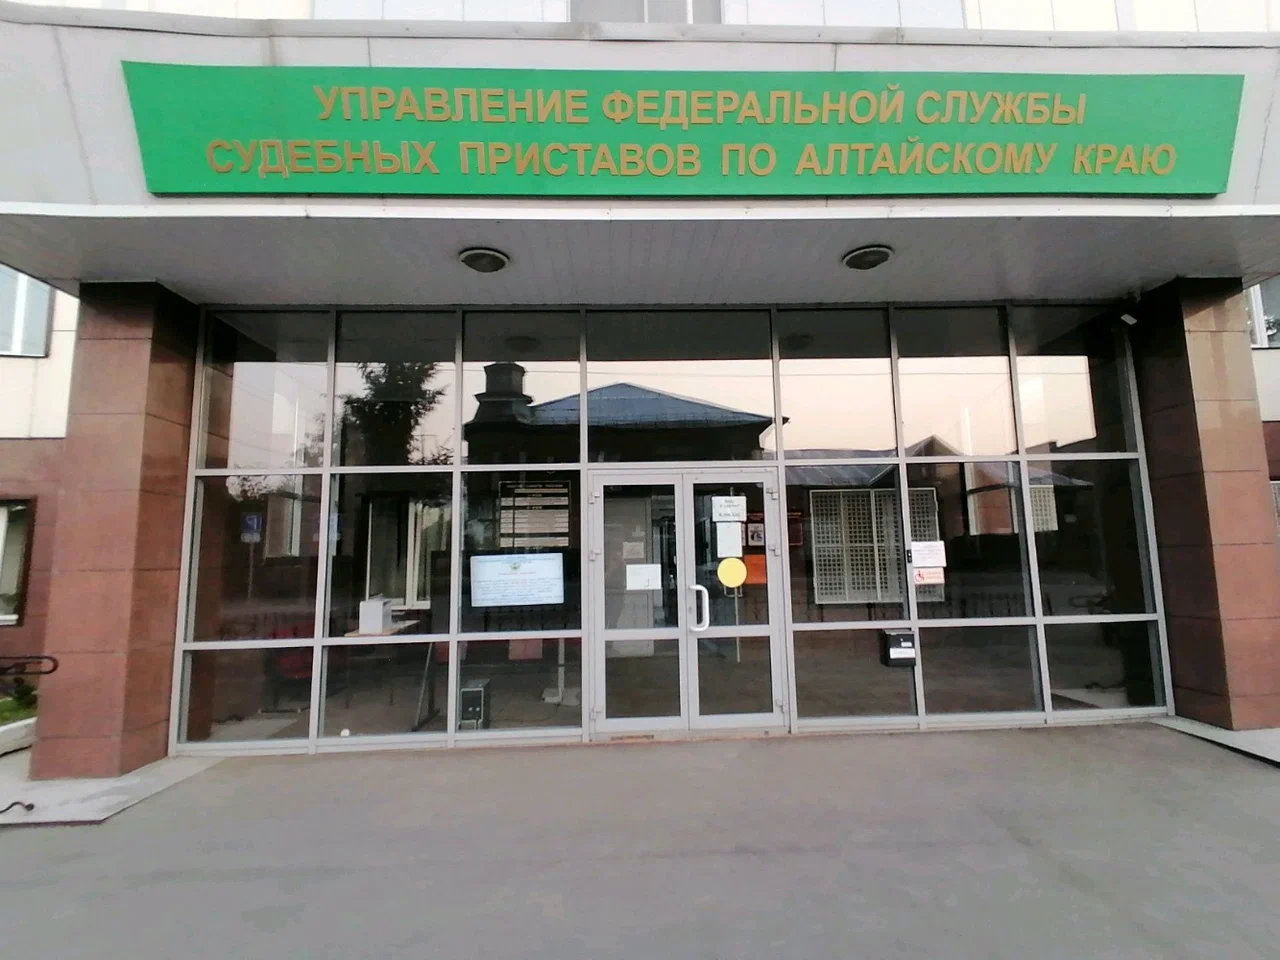 Главное управление Федеральной службы судебных приставов по Алтайскому краю